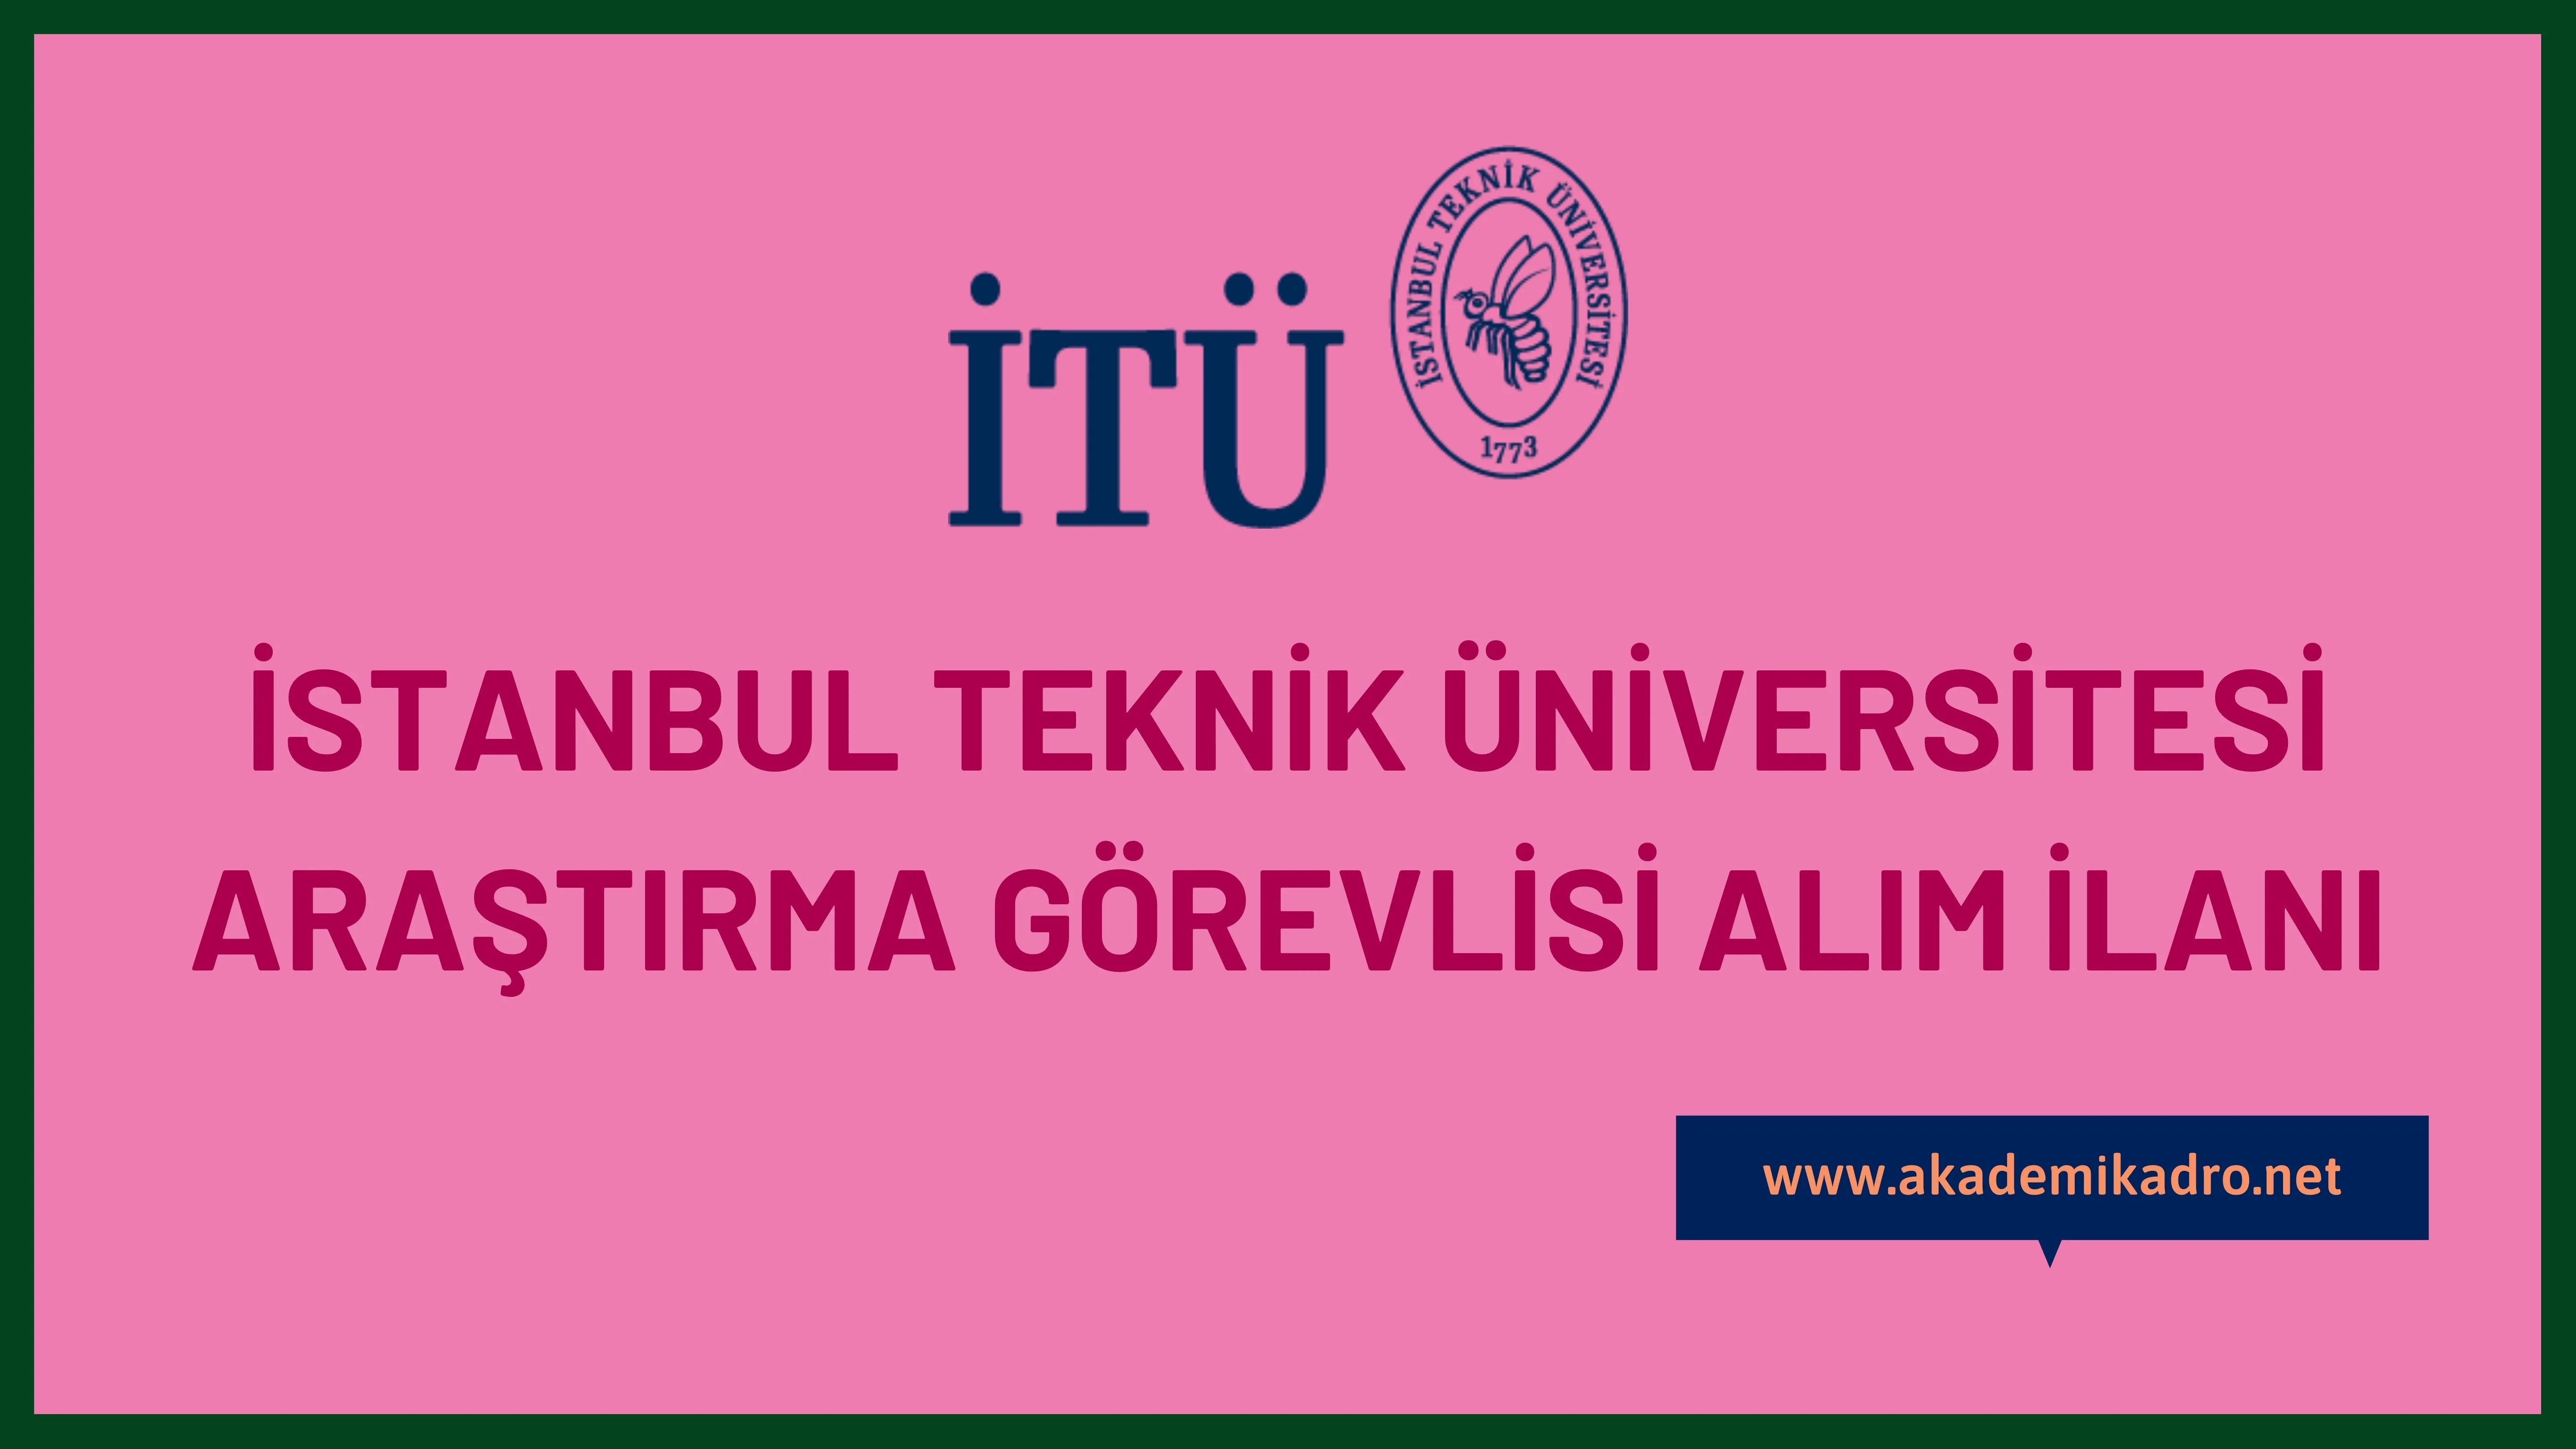 İstanbul Teknik Üniversitesi 54 Araştırma görevlisi, 12 Öğretim görevlisi ve öncelikli alanlardan 35 Araştırma görevlisi alacak.